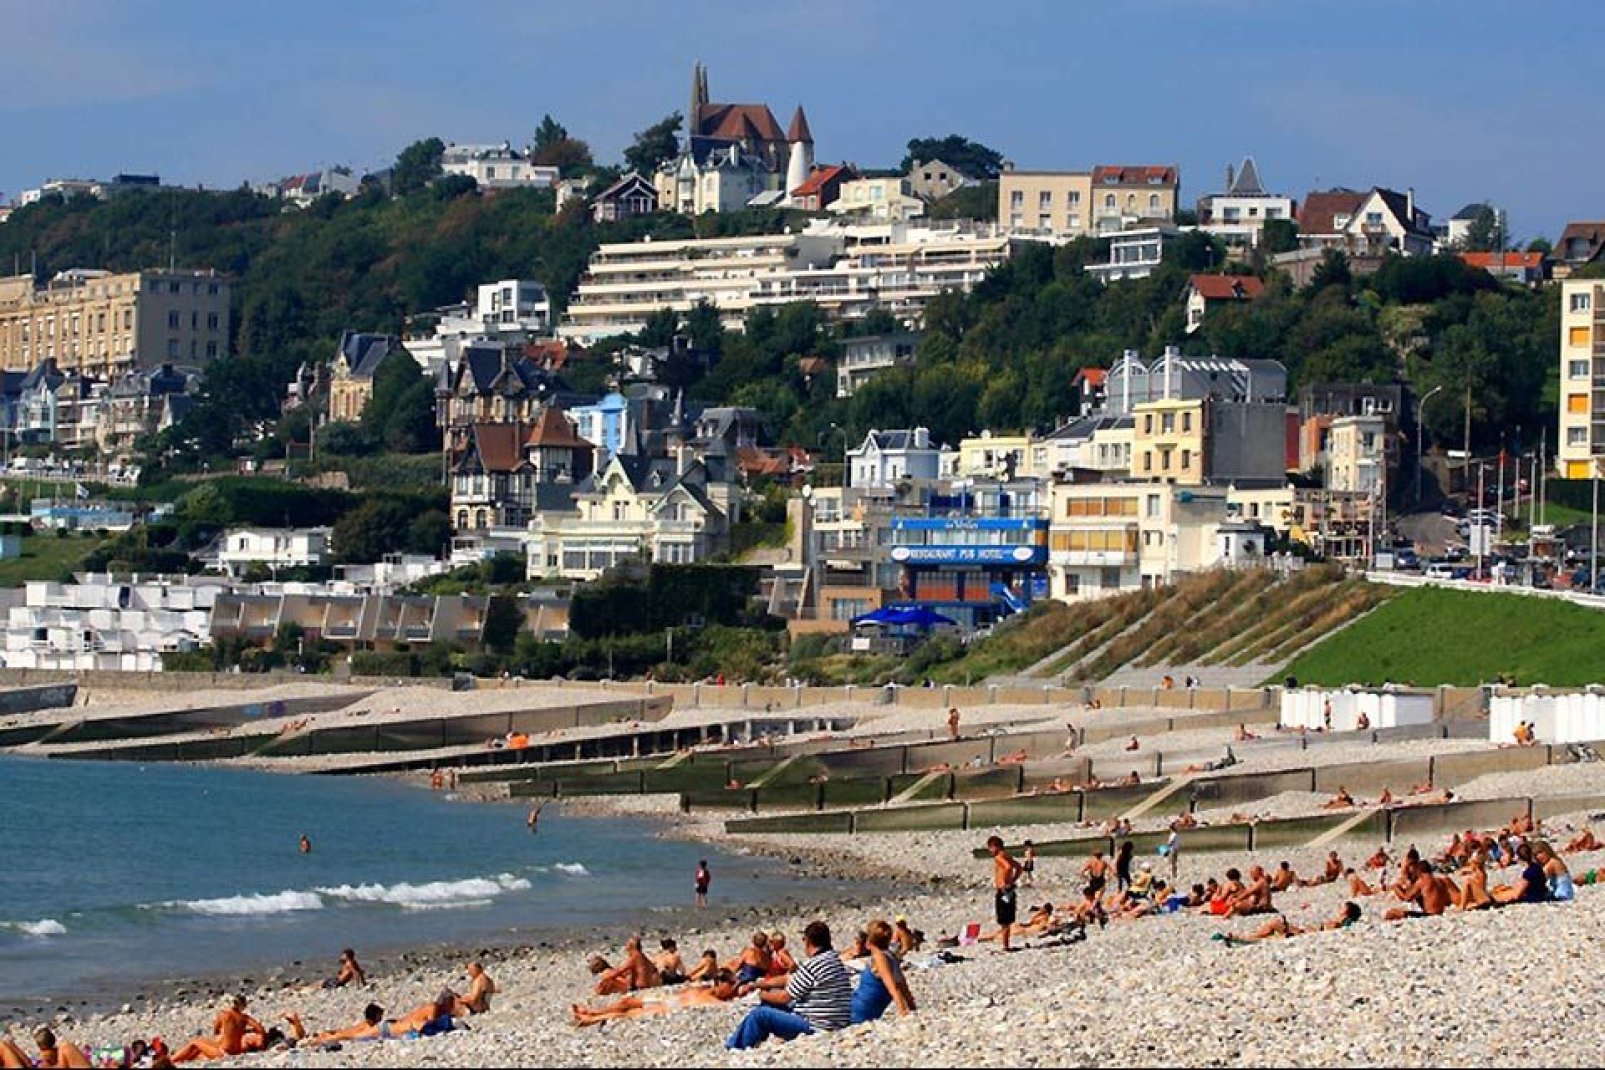 Die Stadt Le Havre wurde 1999 als Badeort einstuft. Am Strand befindet sich insbesondere der größte Freiluft-Skatepark von Frankreich.